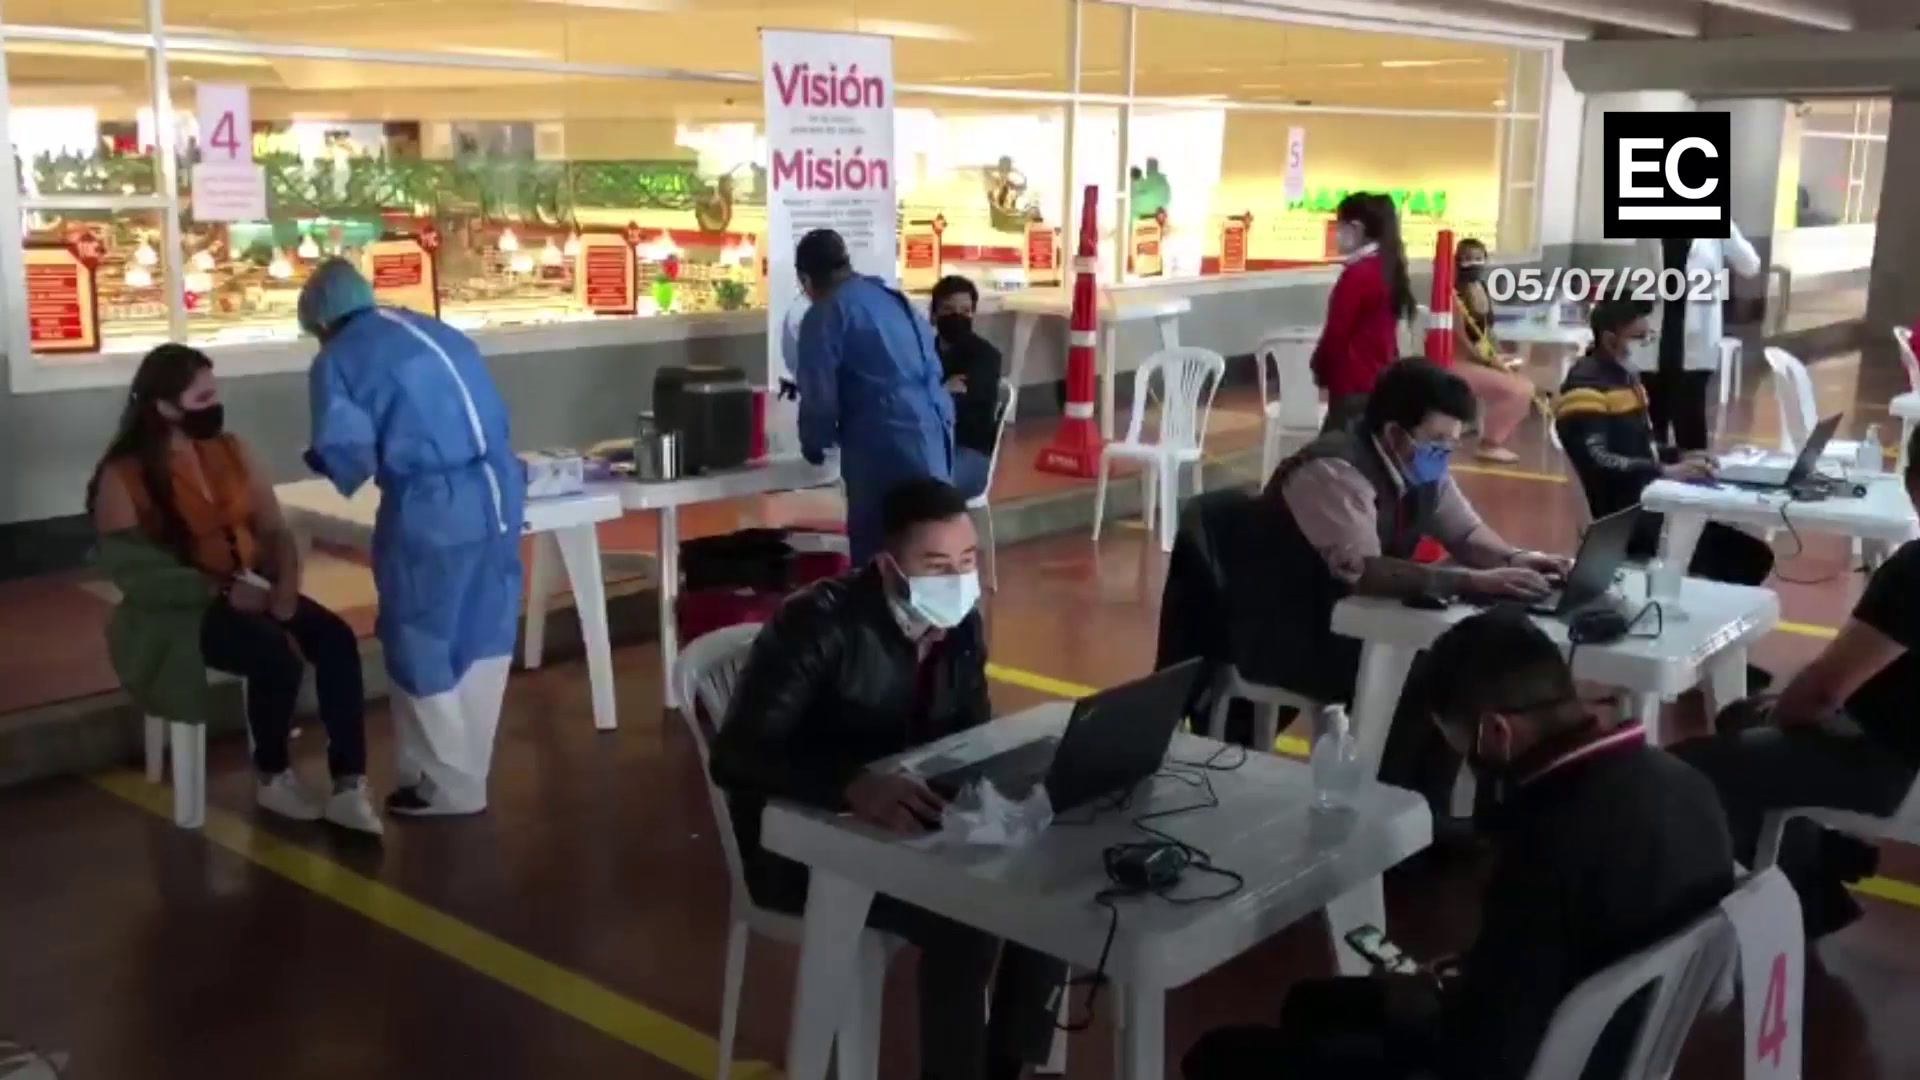 Empresas como Kubiec y Corporación Favorita inocularon a sus colaboradores en Quito. El Gobierno entregó las vacunas y la empresa privada contrató el personal médico y digitadores para la vacunación. Captura